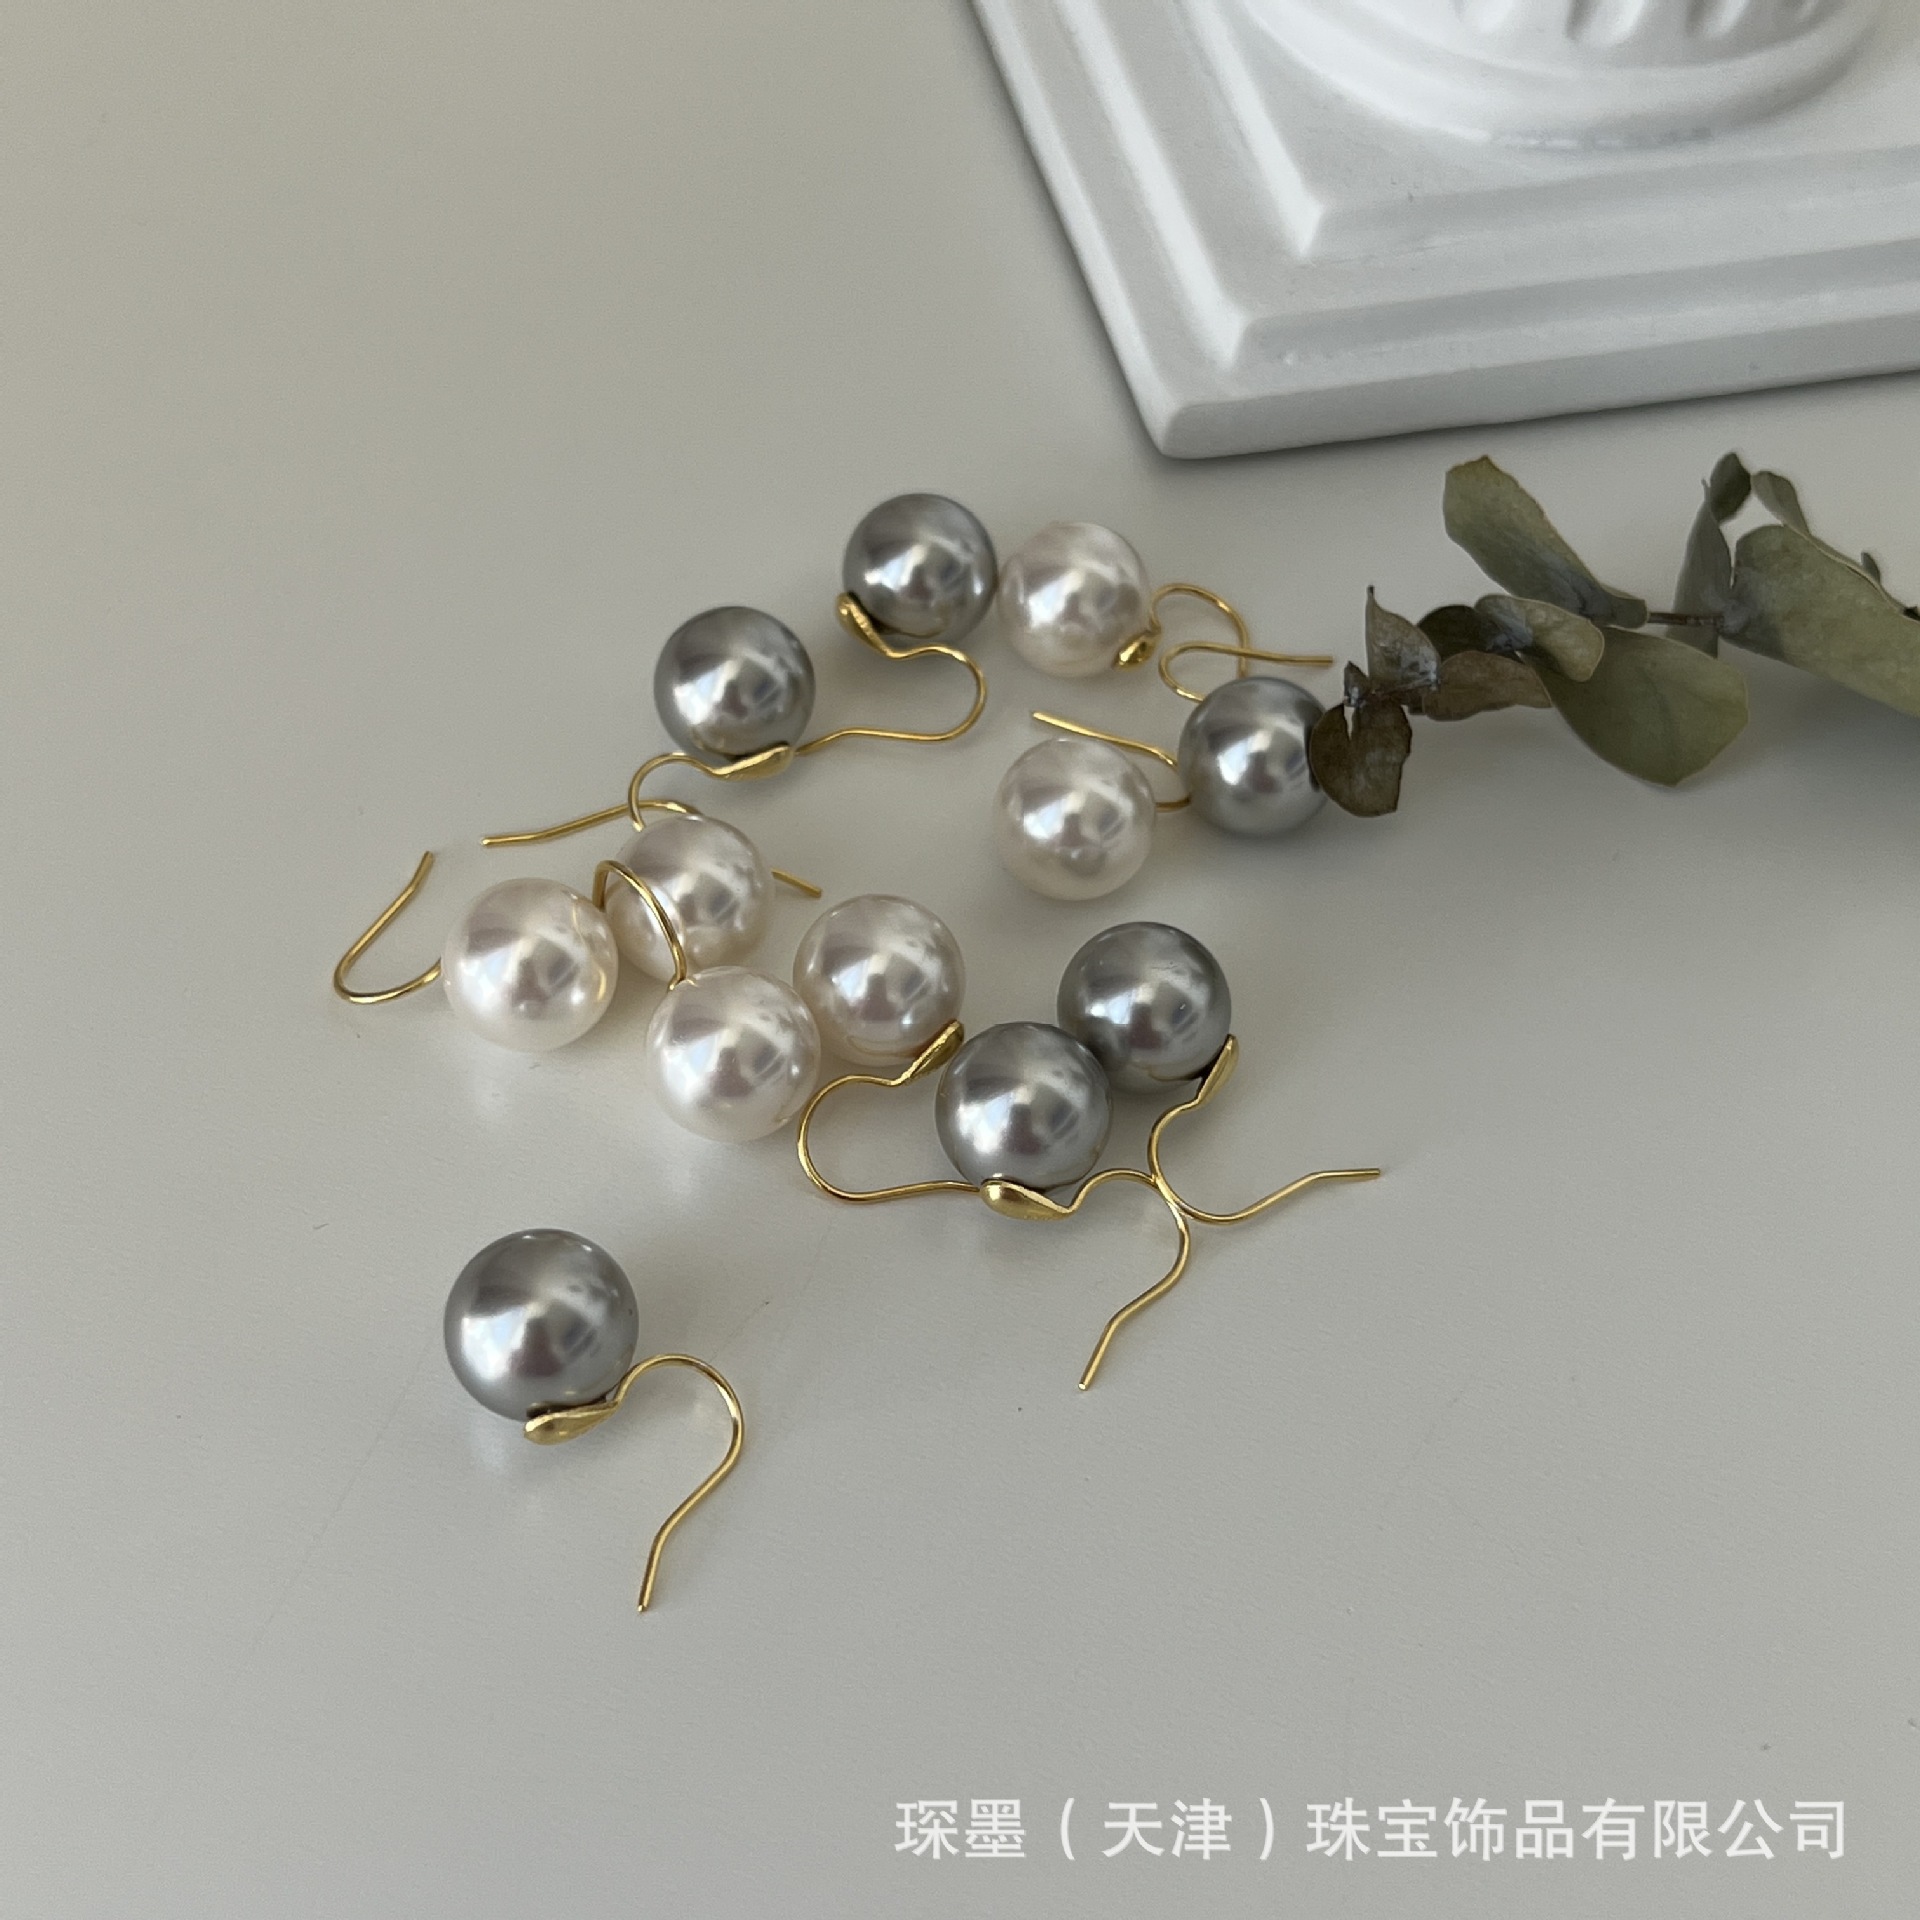 Chen Mo Mild Luxury Retro Sterling Silver Pearl Earrings 925 Silver Needle Women's High Heels Ear Hook Simple Niche Commuter Earrings